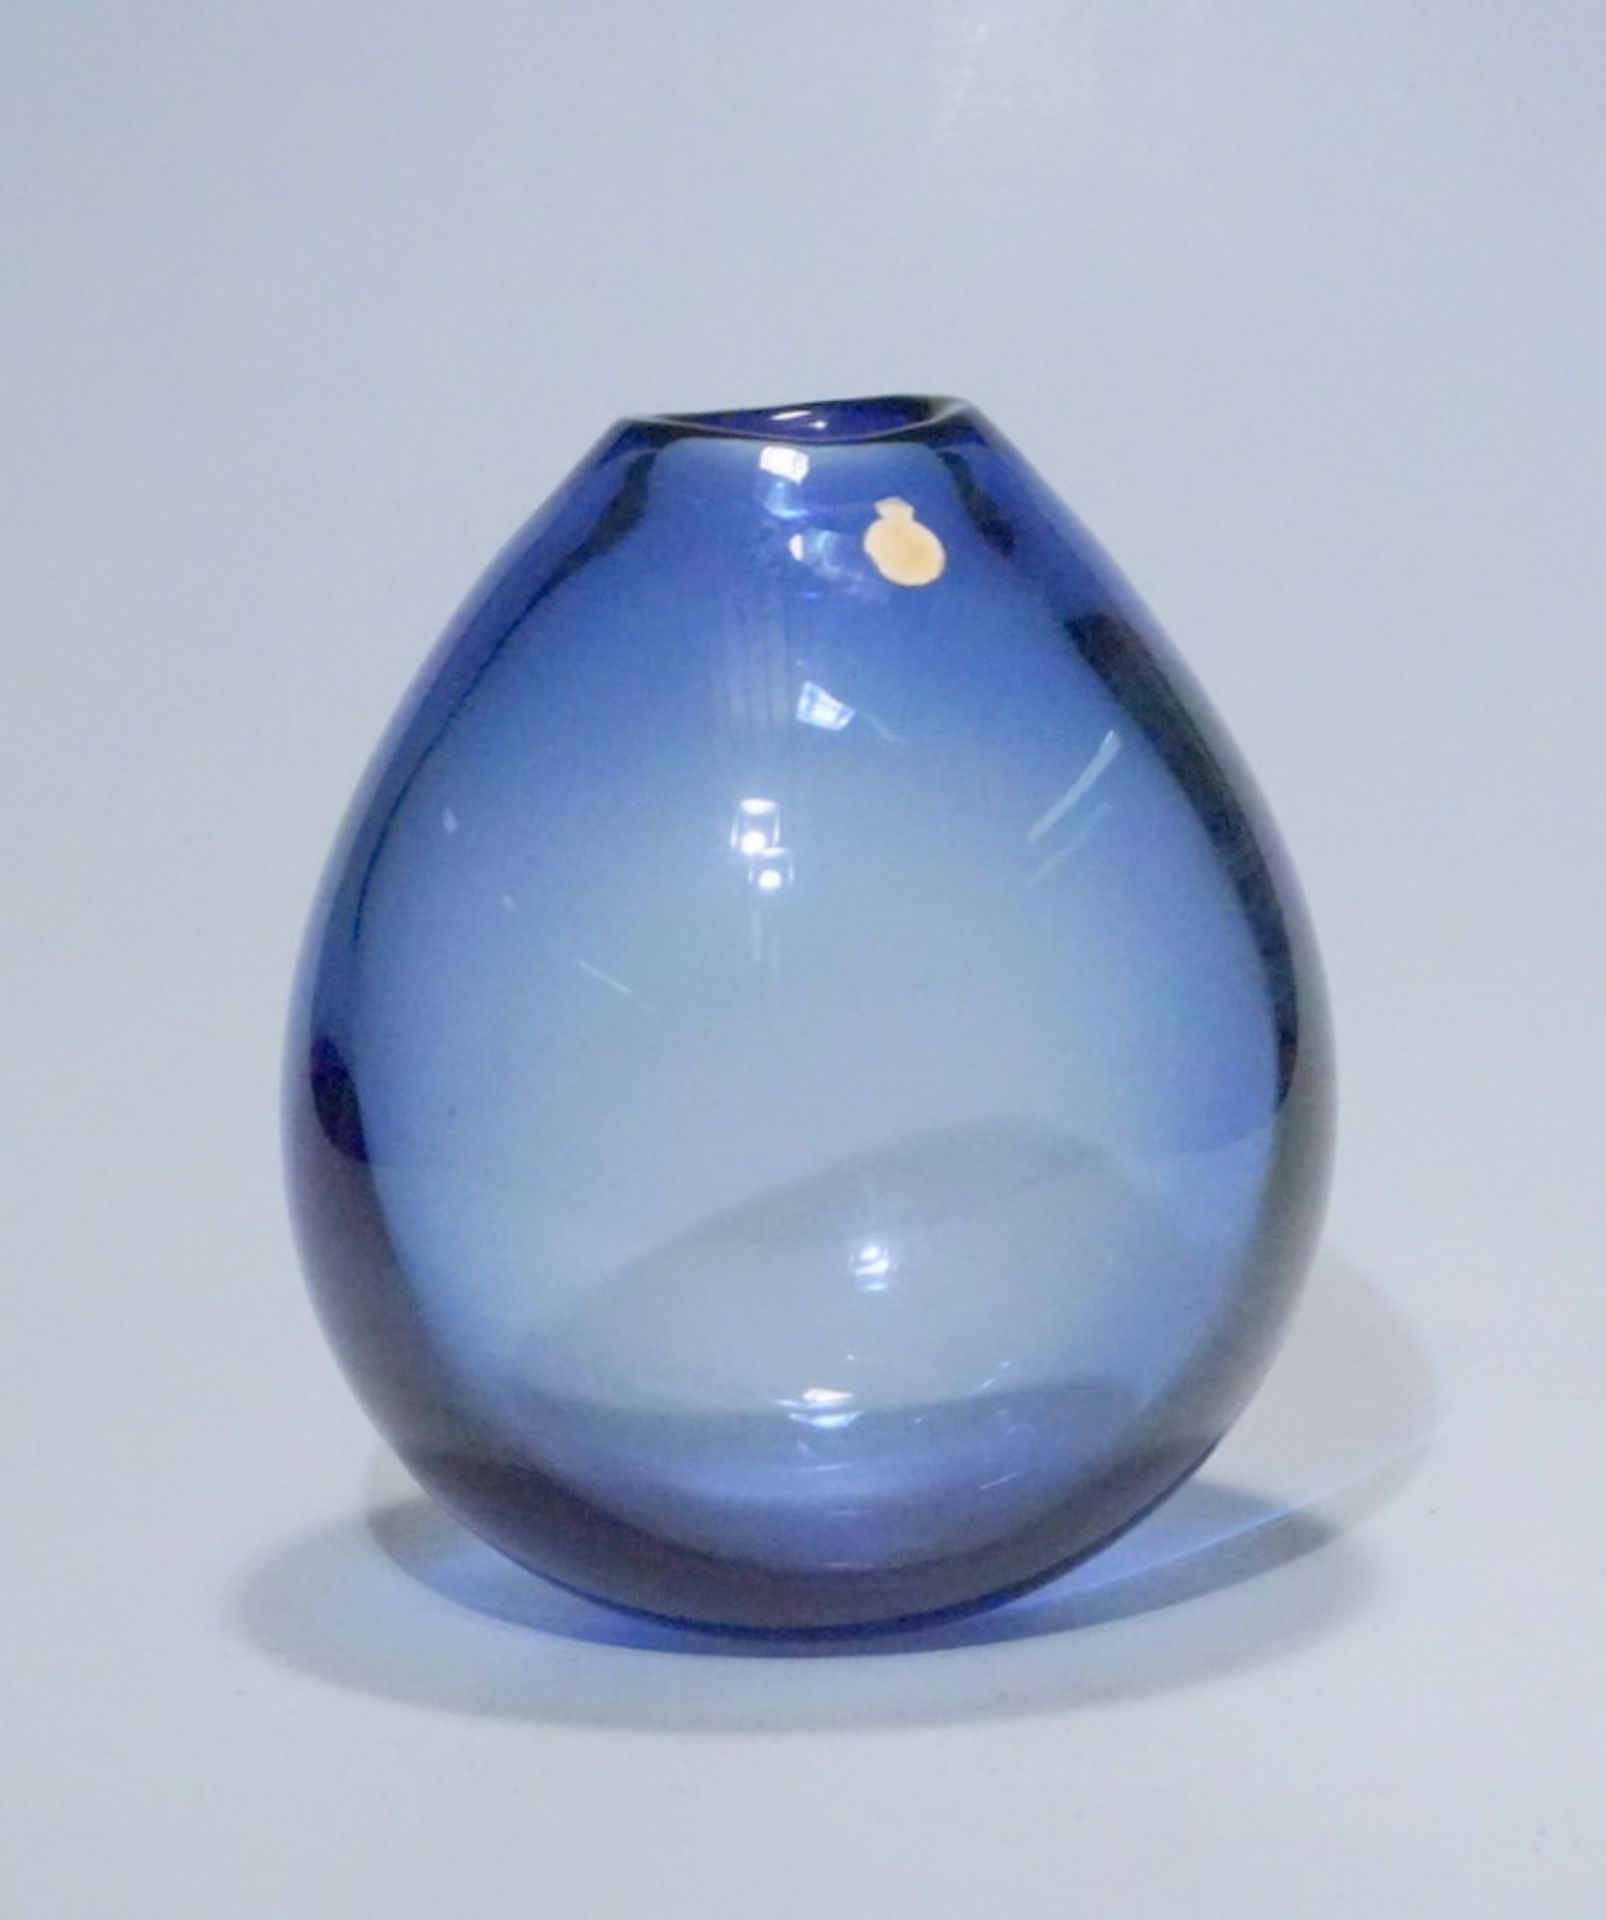 Holmegaard Vase von Peer Lutken 1991blaues lampengeblasenes Glas, Ritznummer, Datierung und